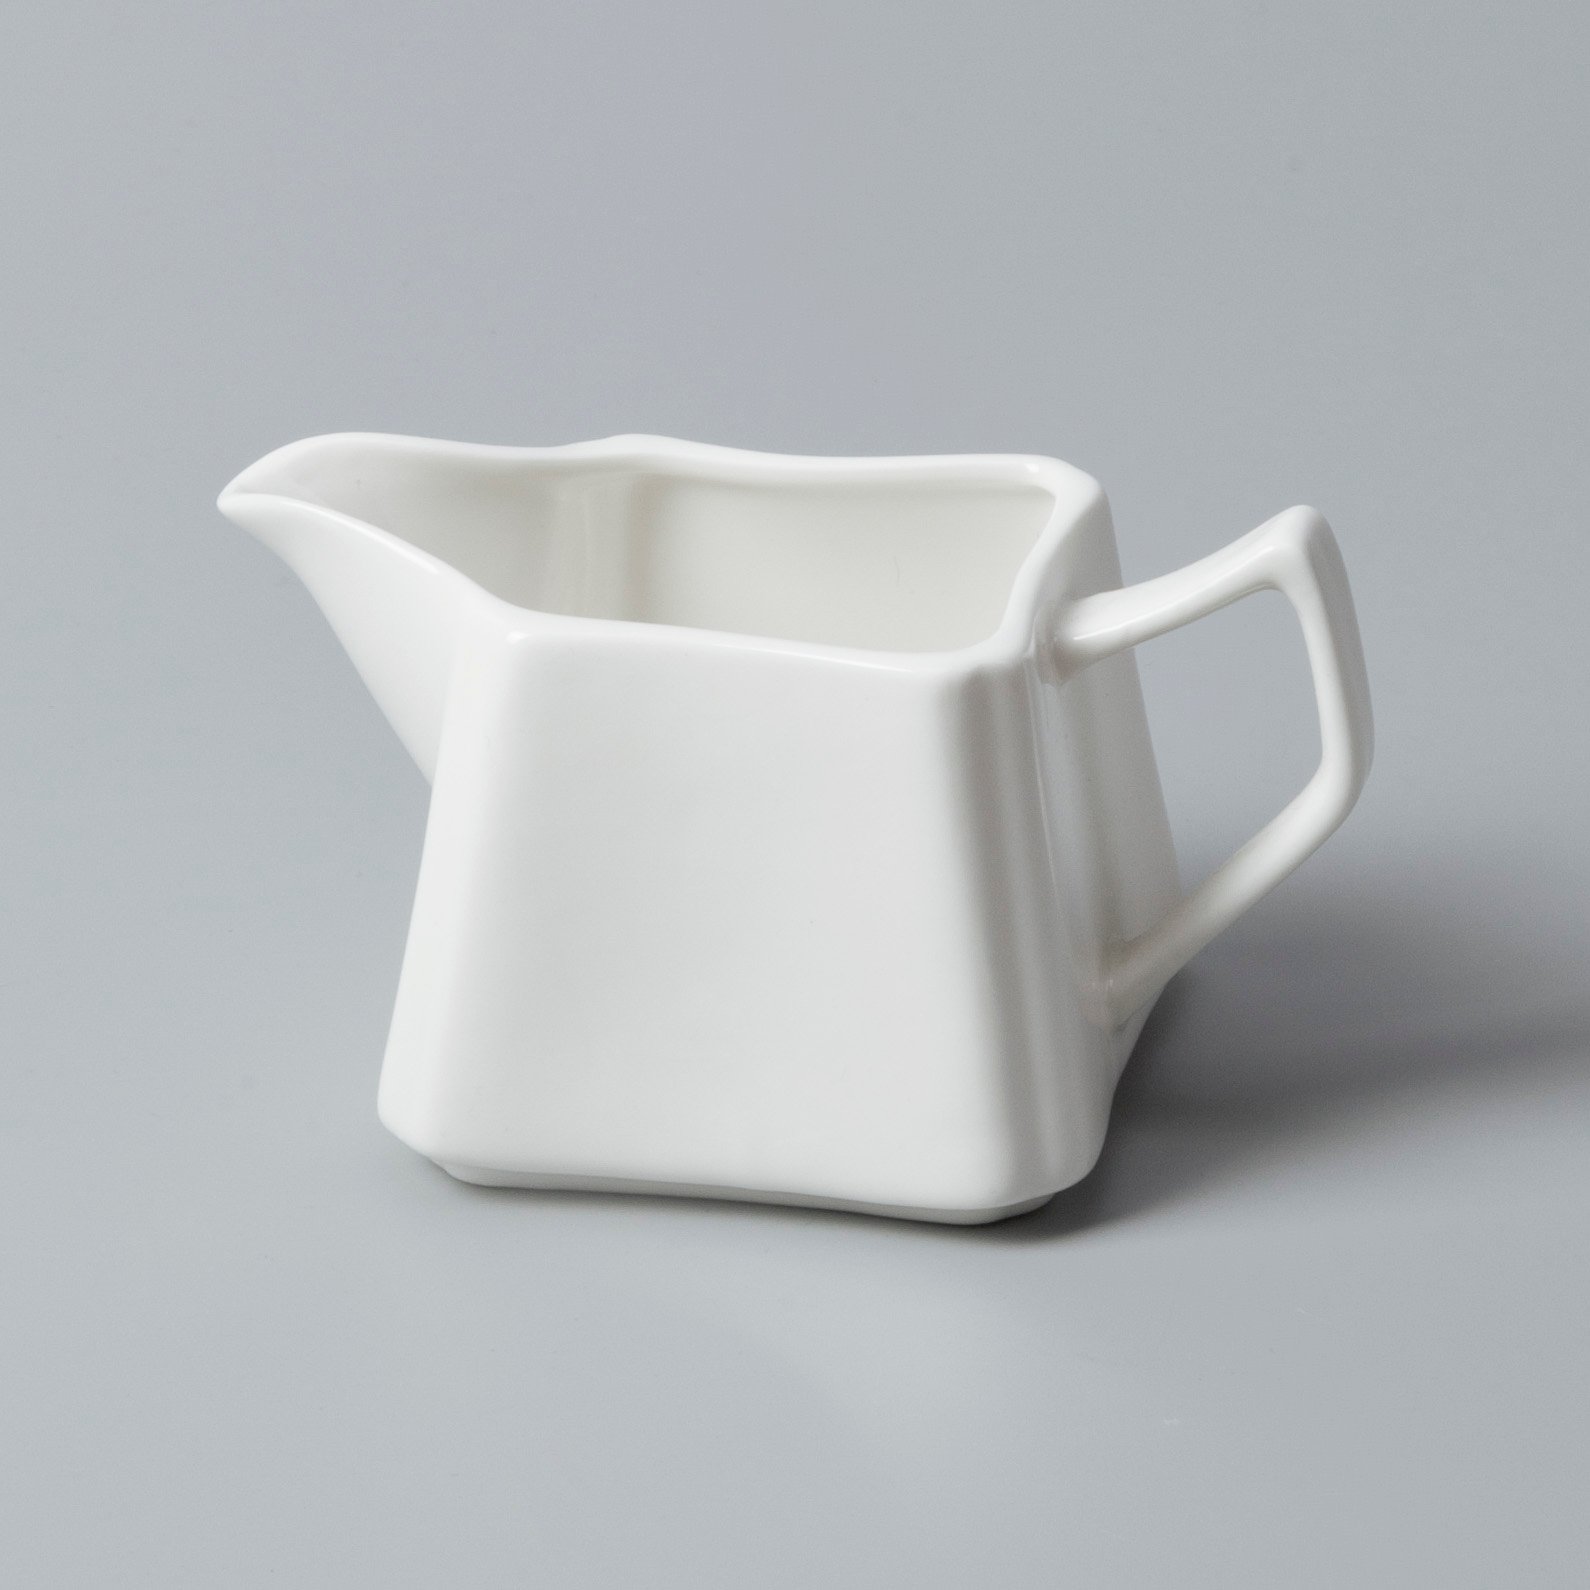 Two Eight irregular restaurant porcelain dinnerware directly sale for dinner-9